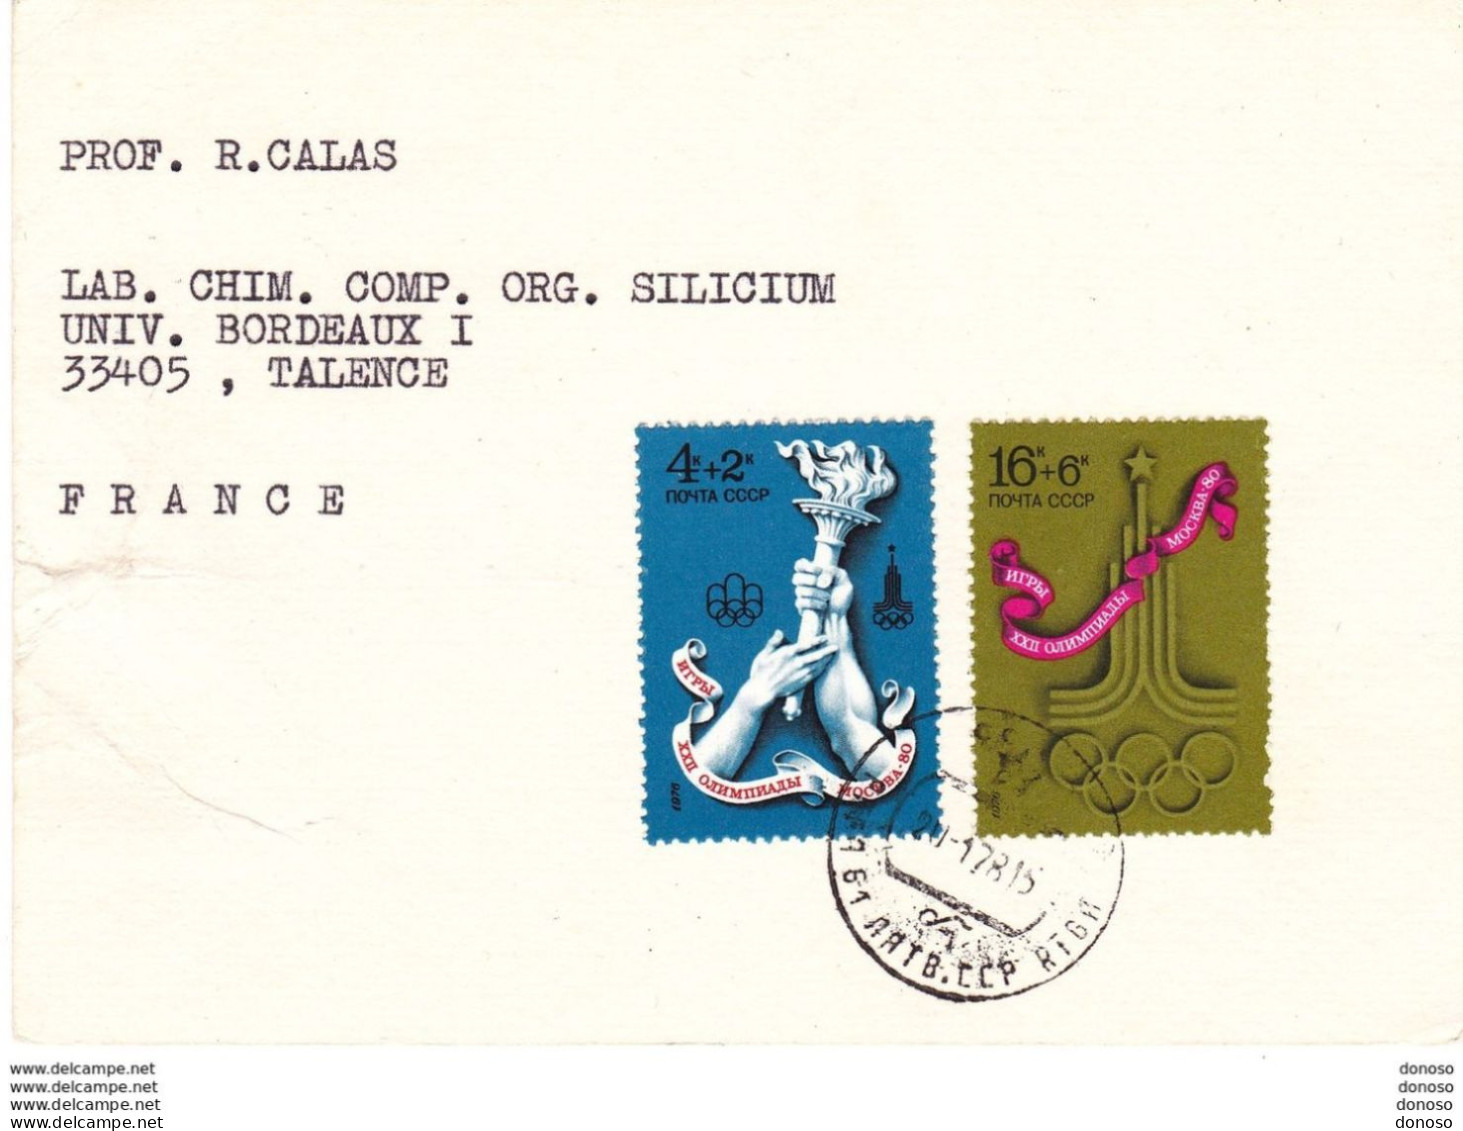 URSS 1978 Carte Pour Faculté Des Sciences De Bordeaux, Timbres Jeux Olympiques - Storia Postale